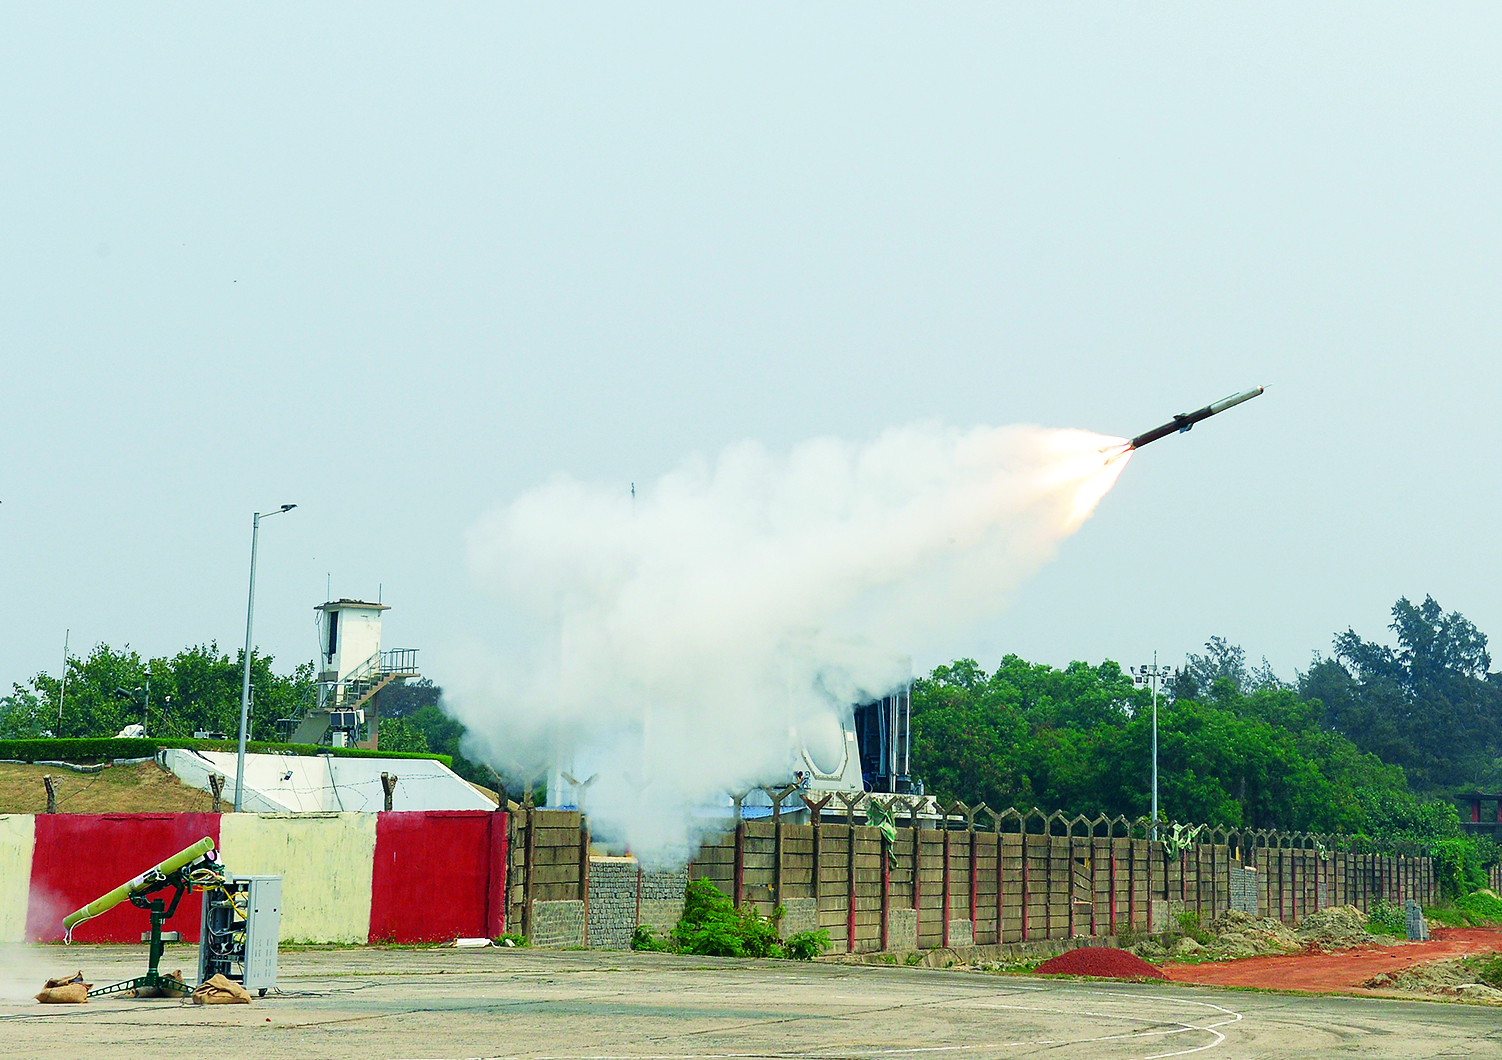 रक्षा अनुसंधान और विकास संगठन ( डीआरडीओ ) ने ओडिशा समुद्र तट से बहुत कम दूरी की वायु रक्षा प्रणाली मिसाइल ( प्रक्षेपणास्त्र ) के लगातार दो सफल उड़ान परीक्षण किए